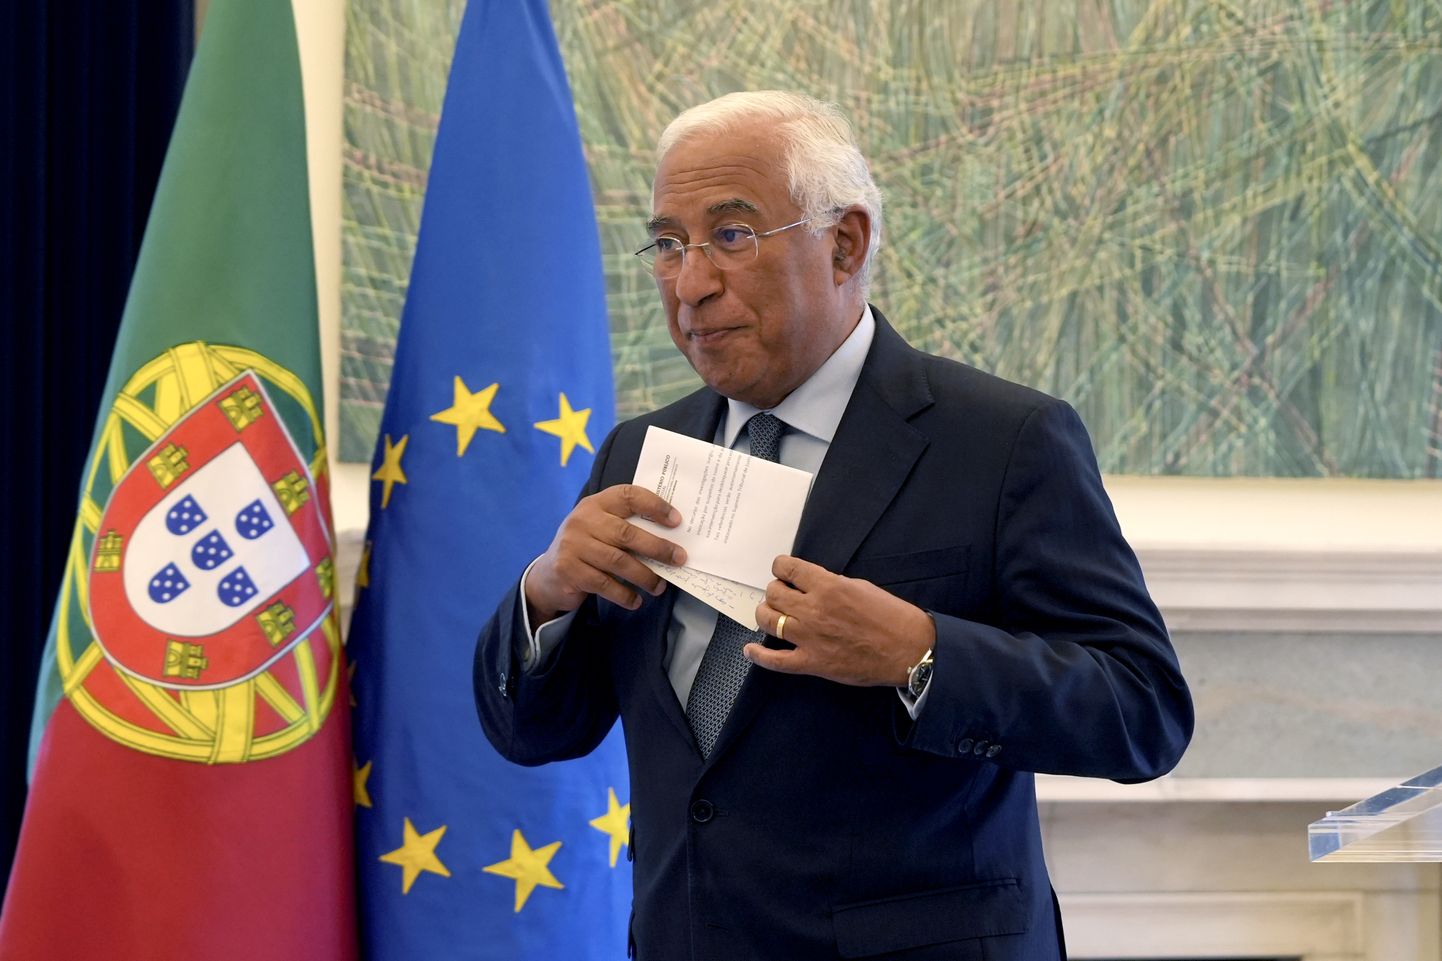 Portugali peaminister António Costa teatas täna pärast seda, kui politsei otsis läbi tema ametiresidentsi, et astub tagasi.